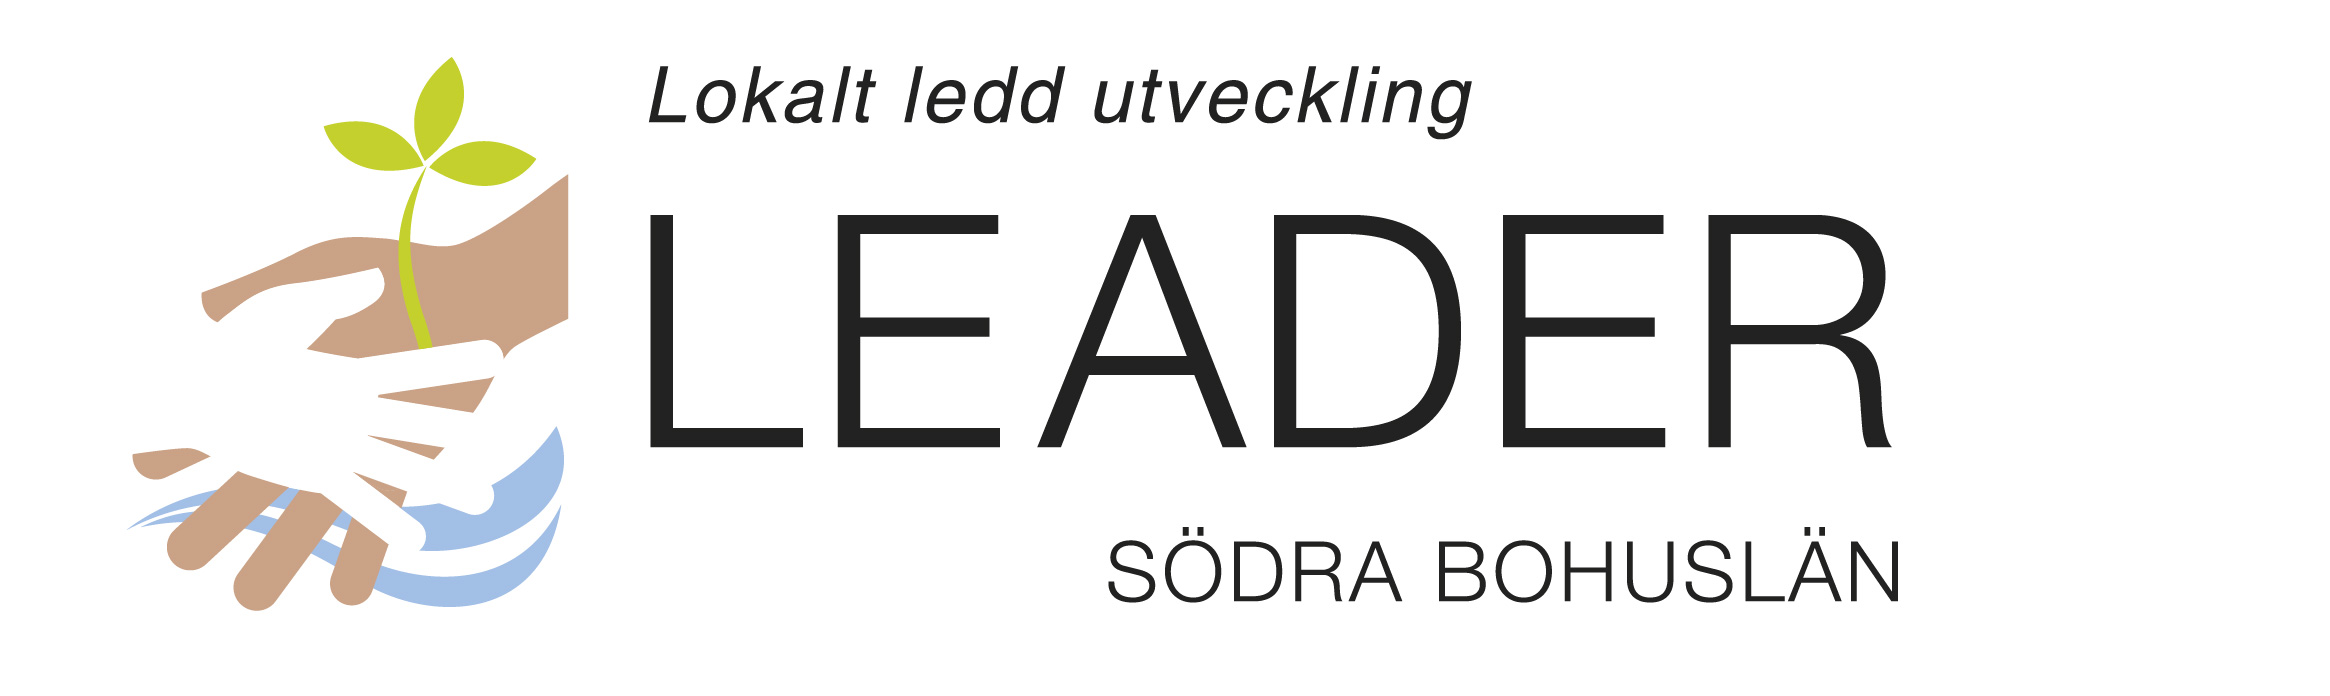 Leader Södra bohuslän